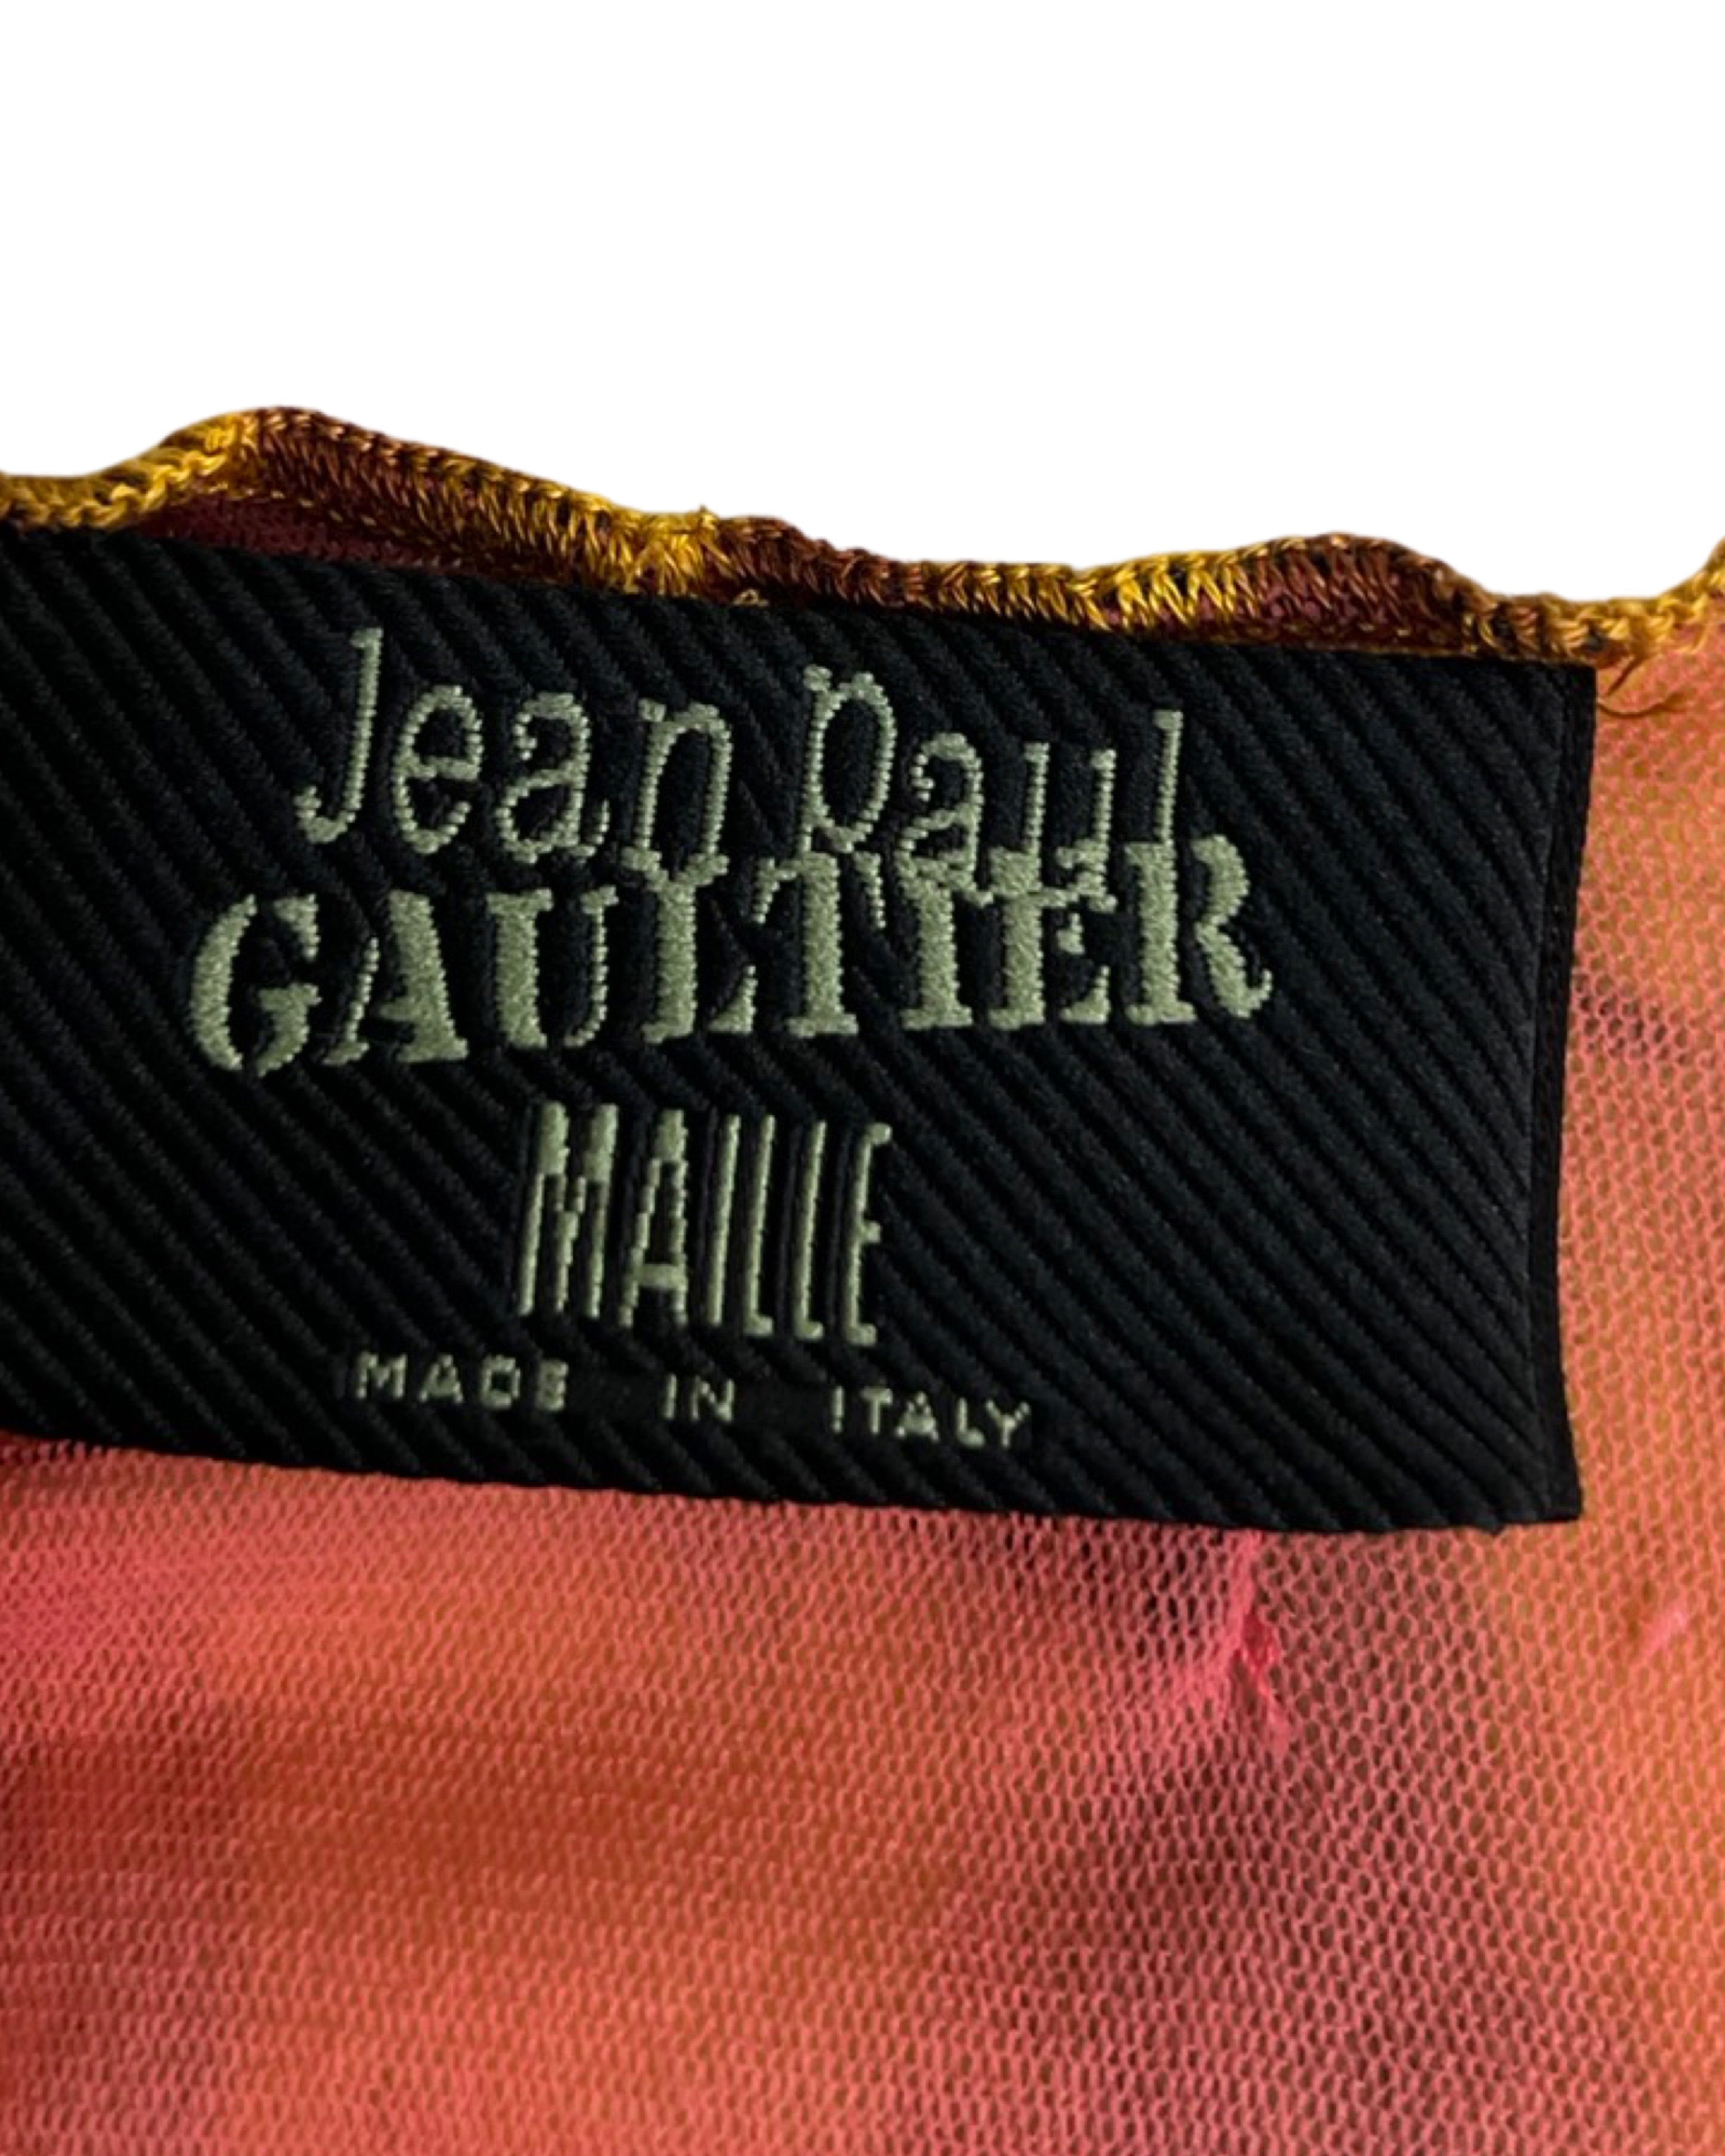 Jean-Paul Gaultier Spring 1999 Venus De Milo Mesh Dress